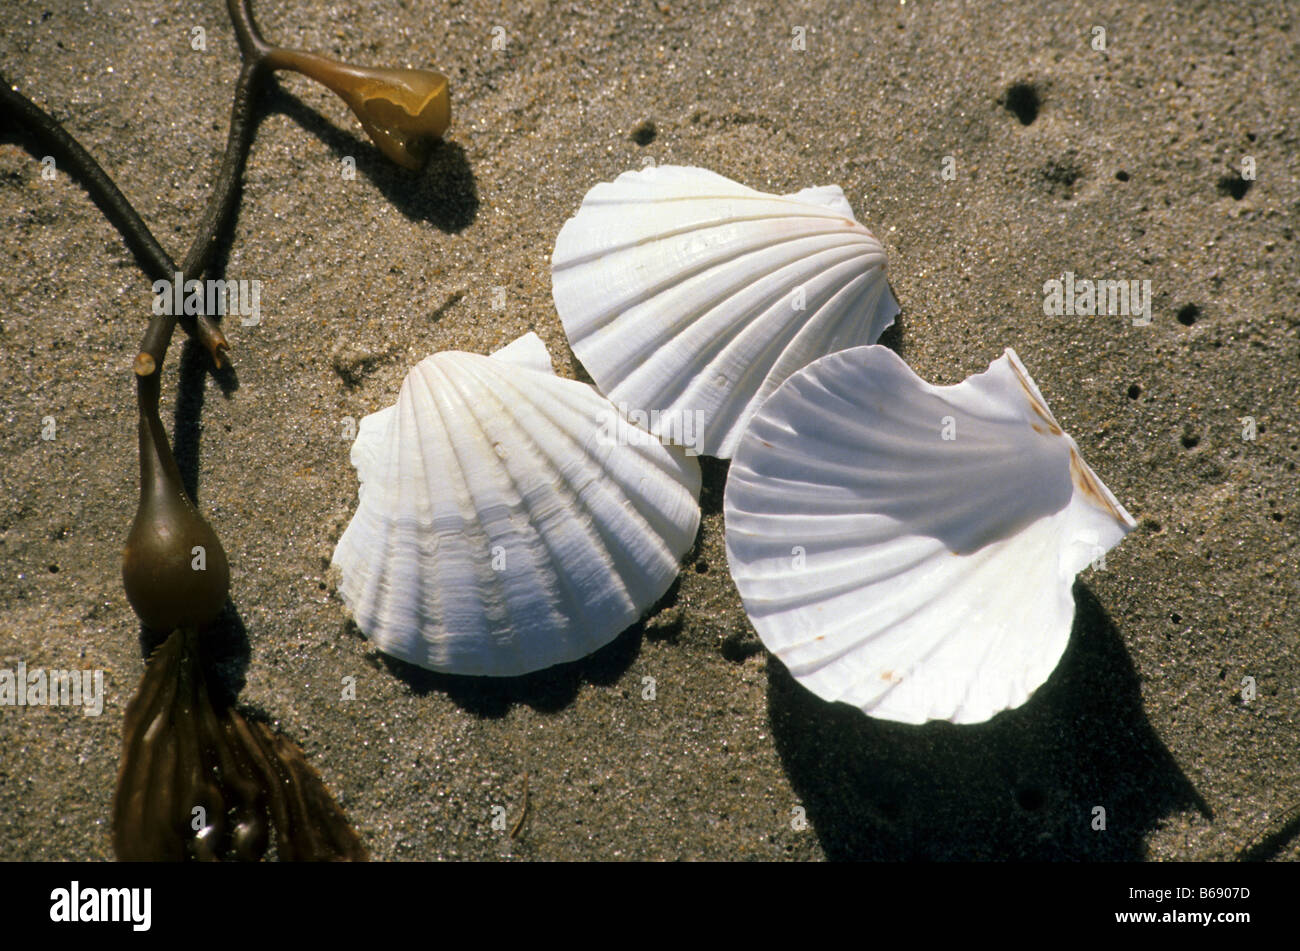 Three white seashells rest on sand next to seaweed on beach Stock Photo